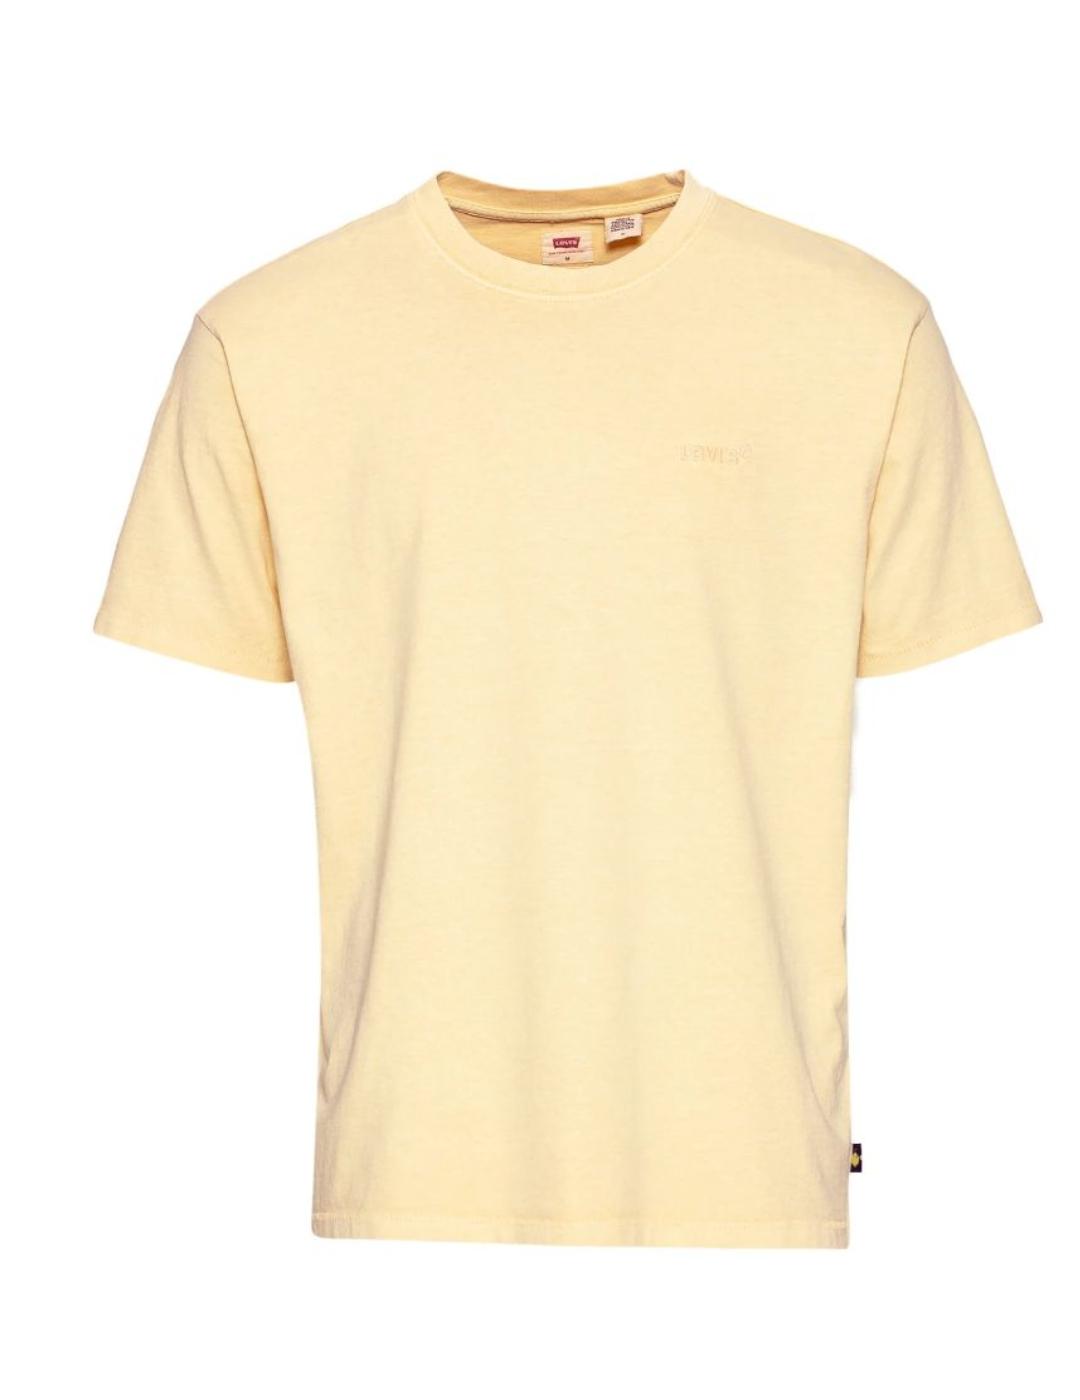 Camiseta Levis Vintage amarilla para hombre -a